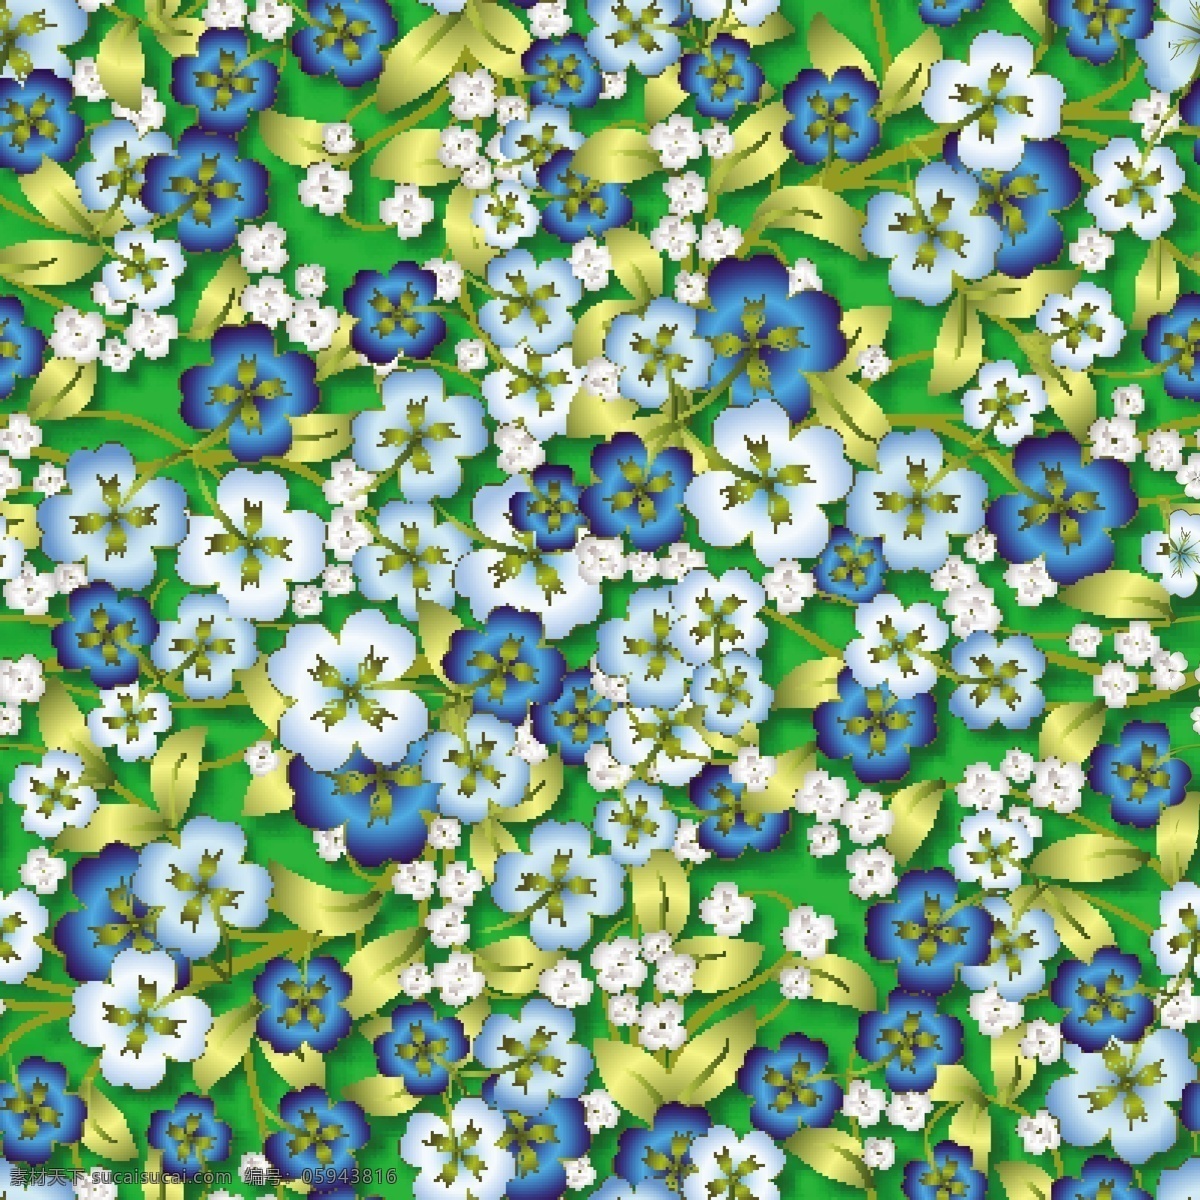 蓝色 精美 花朵 立体 无缝 背景 底纹背景 服装印花 花朵花纹 花朵设计 家纺印花 渐变花朵 手绘立体 无缝印花 植物花卉 植物手绘